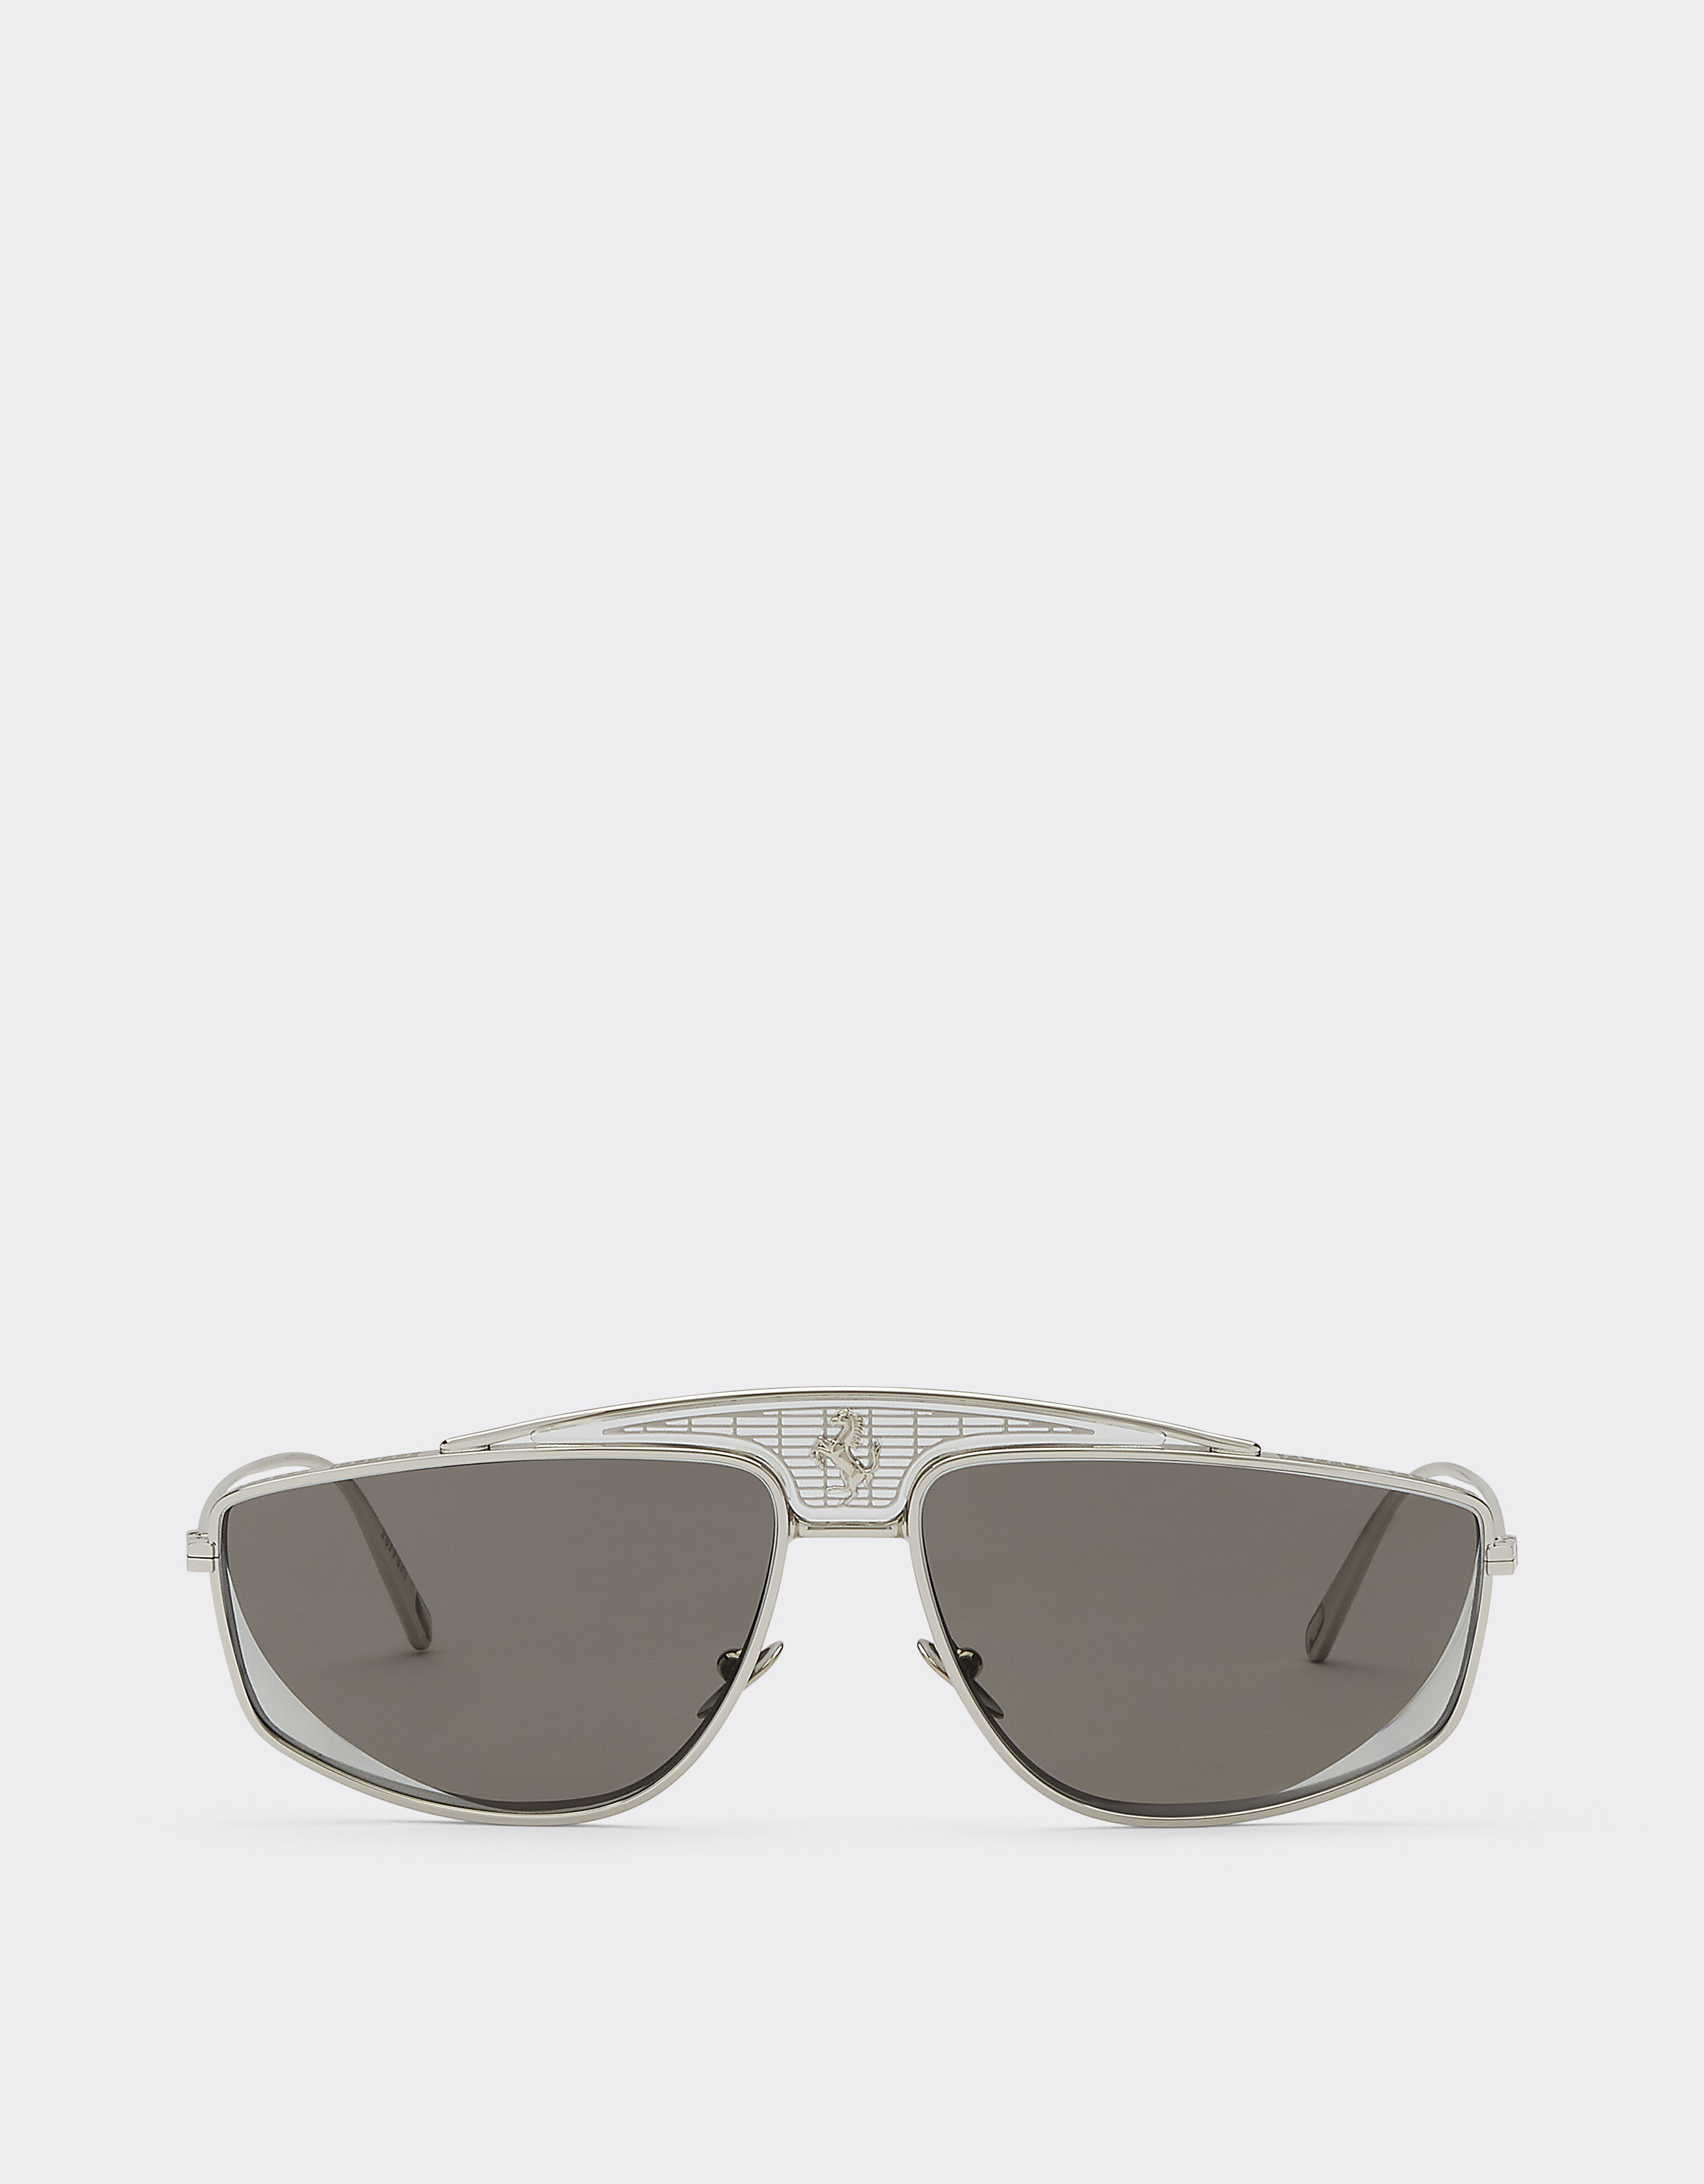 Ferrari Ferrari-Sonnenbrille mit silberfarben verspiegelten Gläsern Silber F0408f